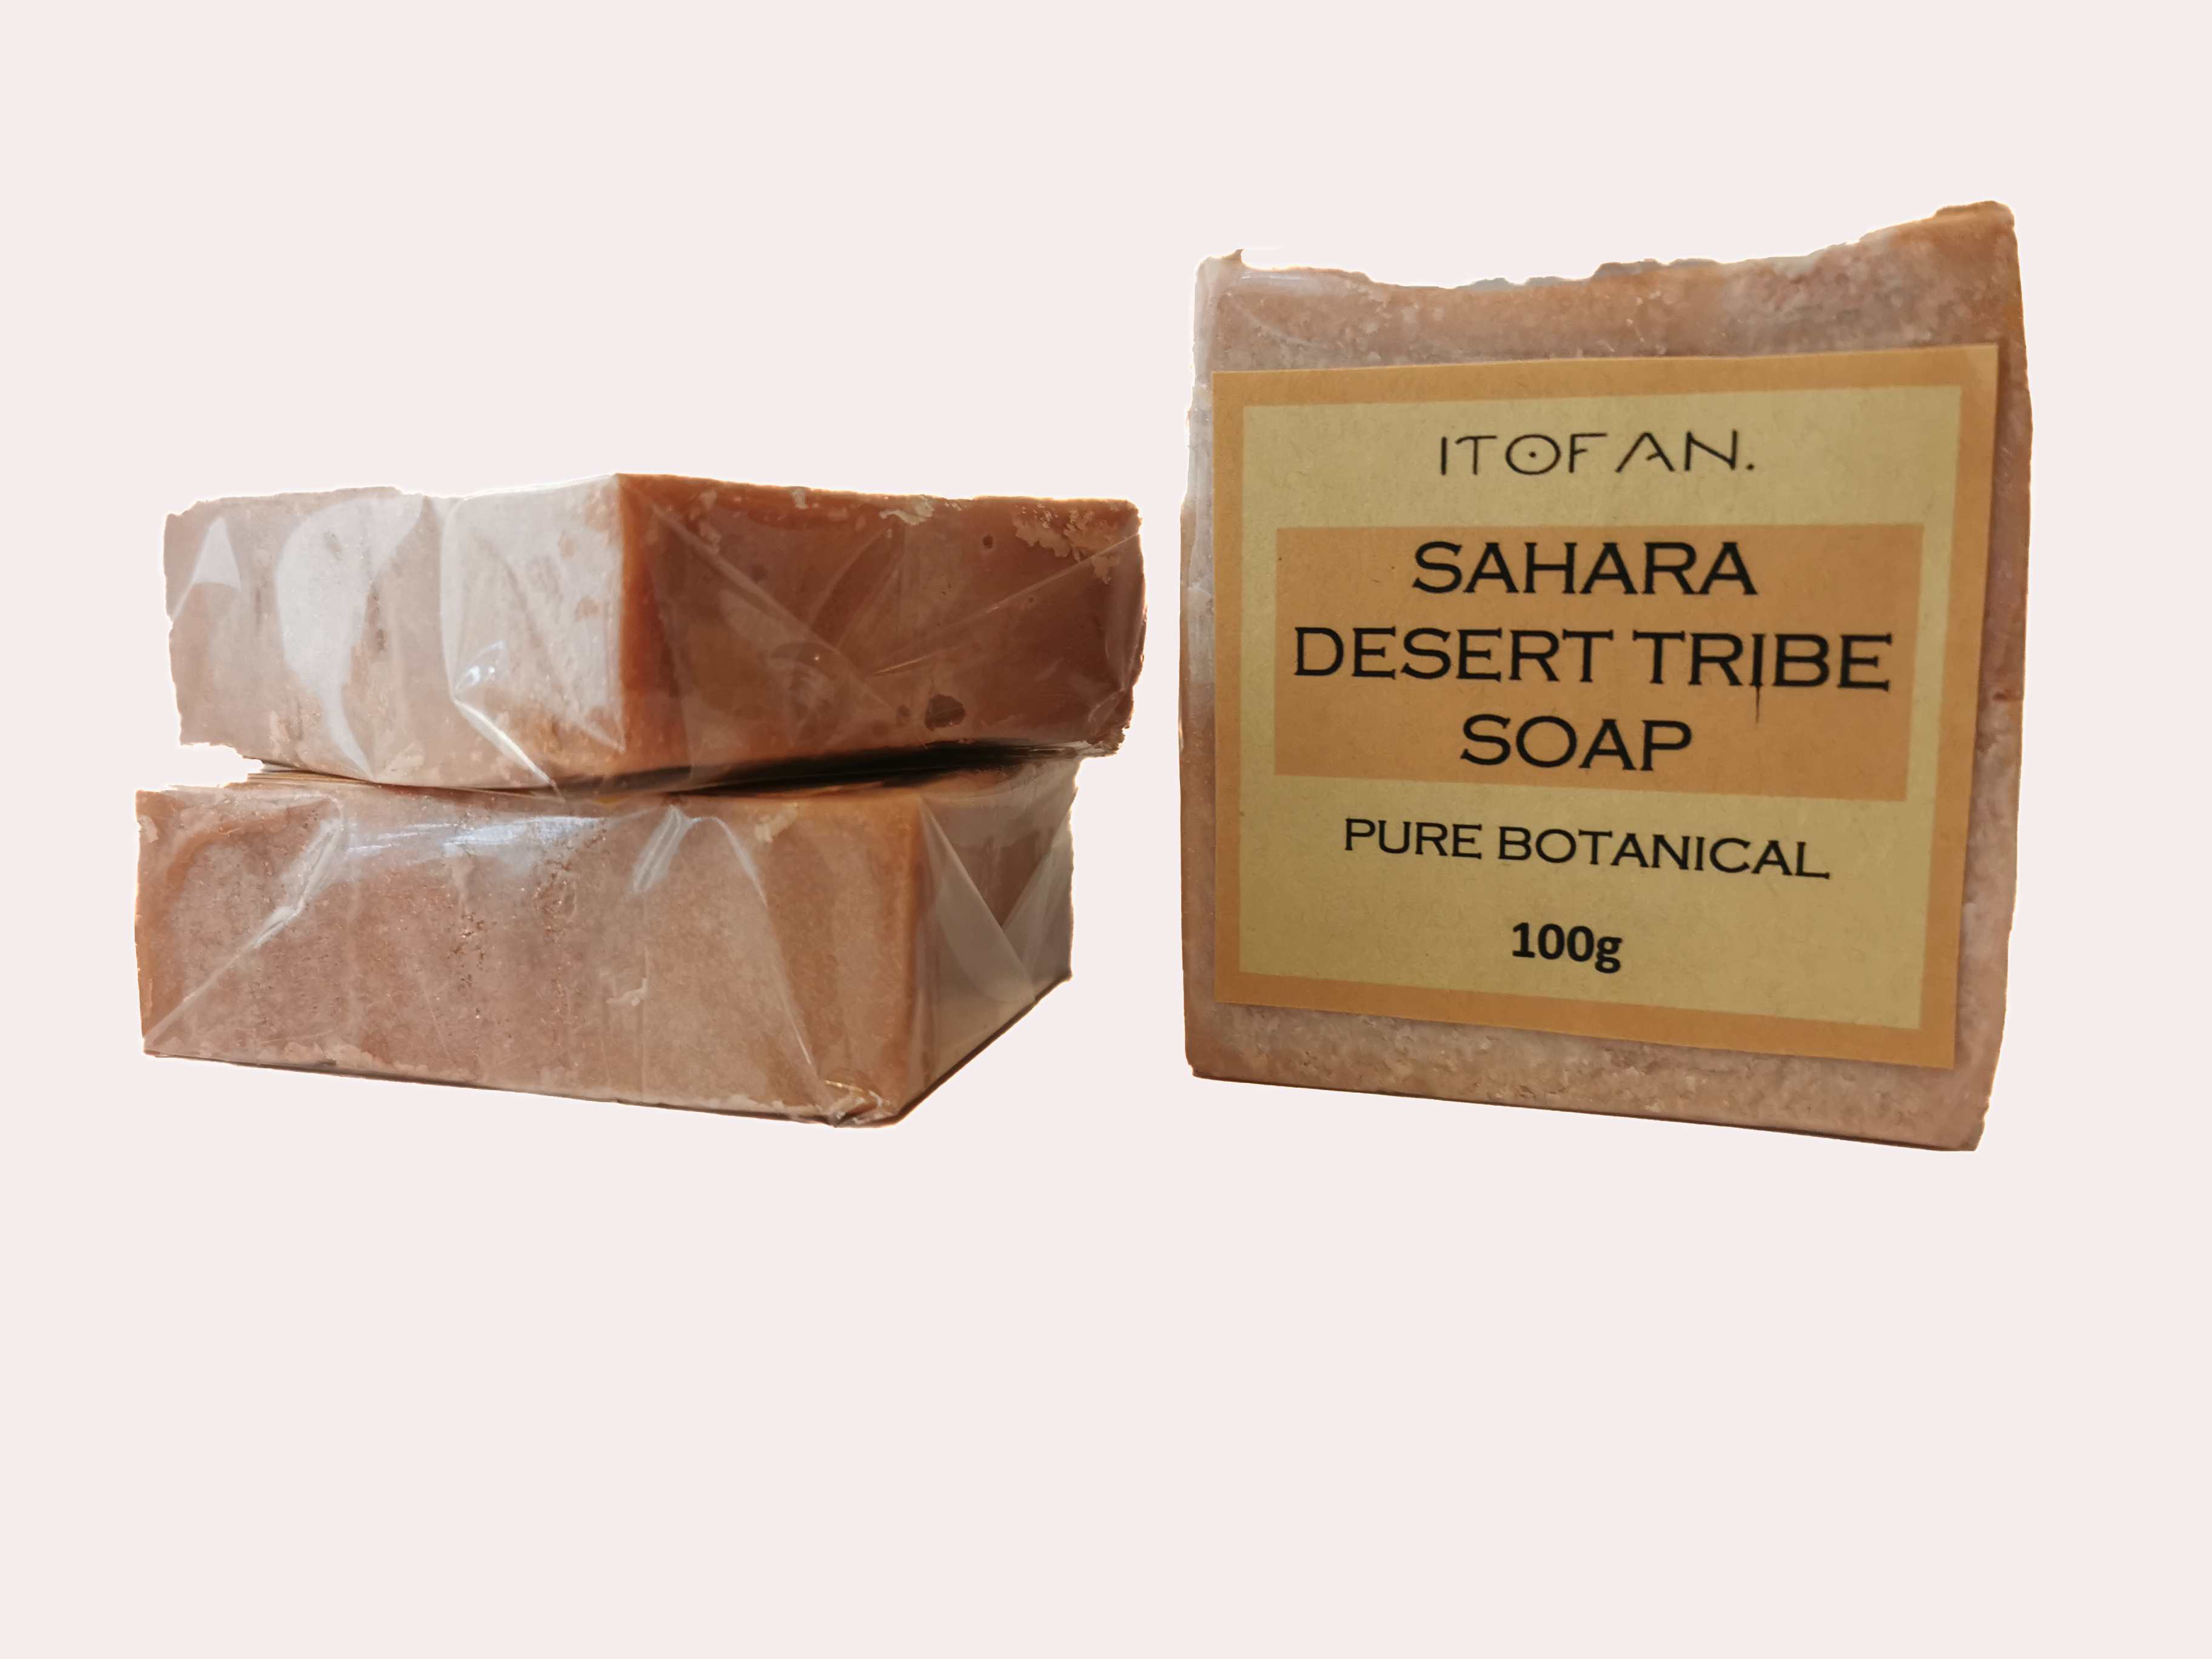 Sahara Desert Tribe Soap